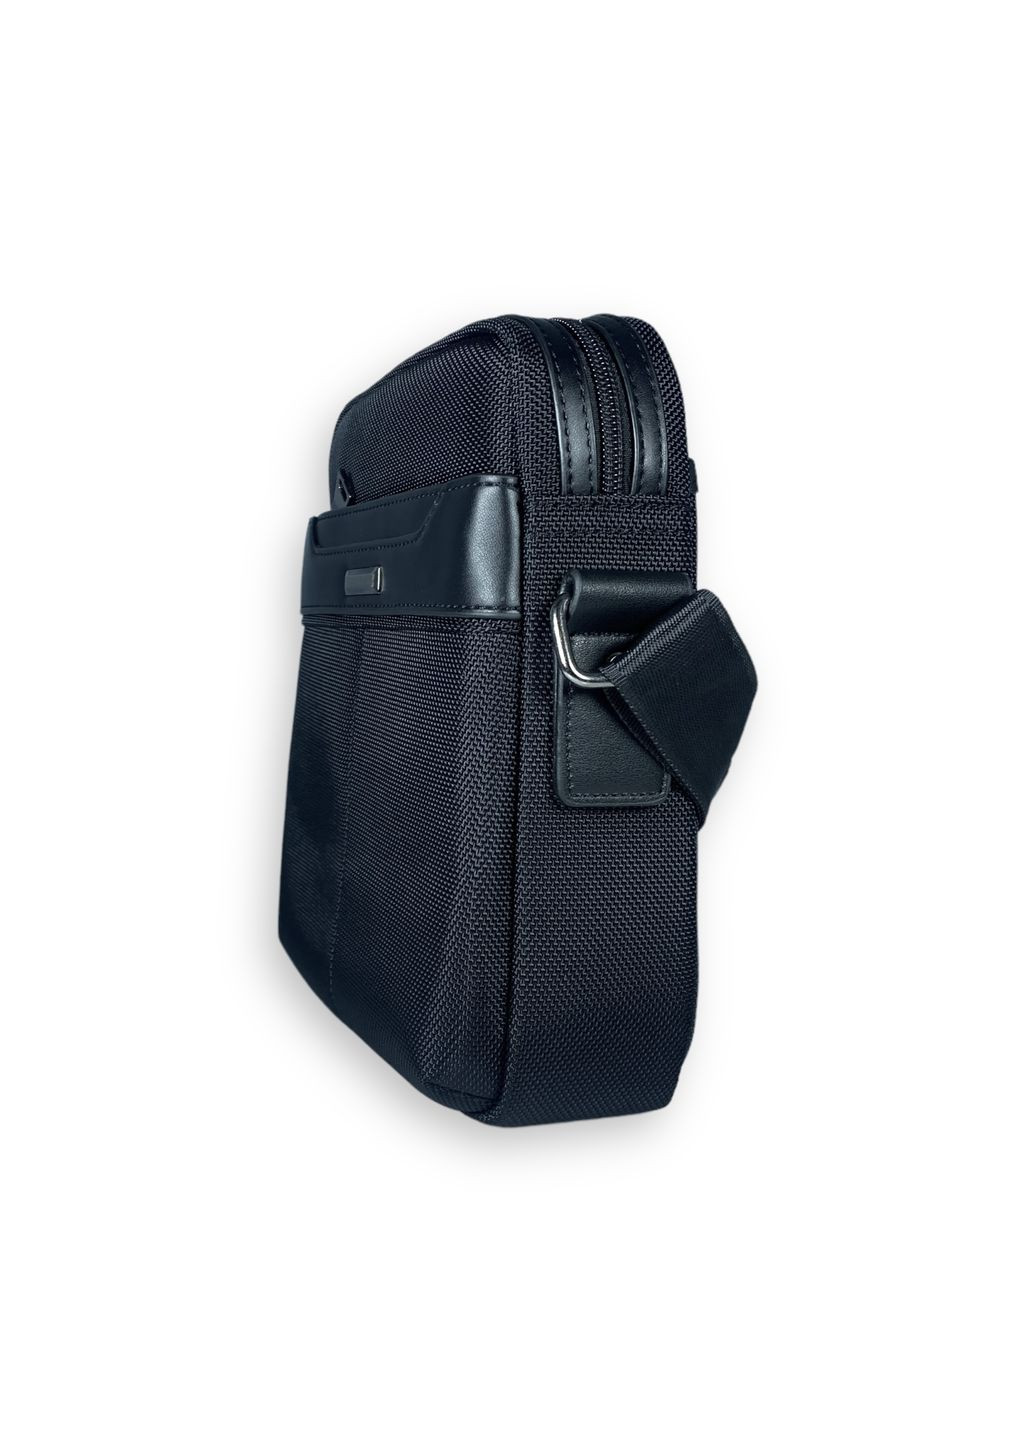 Сумка через плечо, один отдел, наружный карман, фронтальный карман, размер: 24*20*8 см, черный Filippini (285814955)